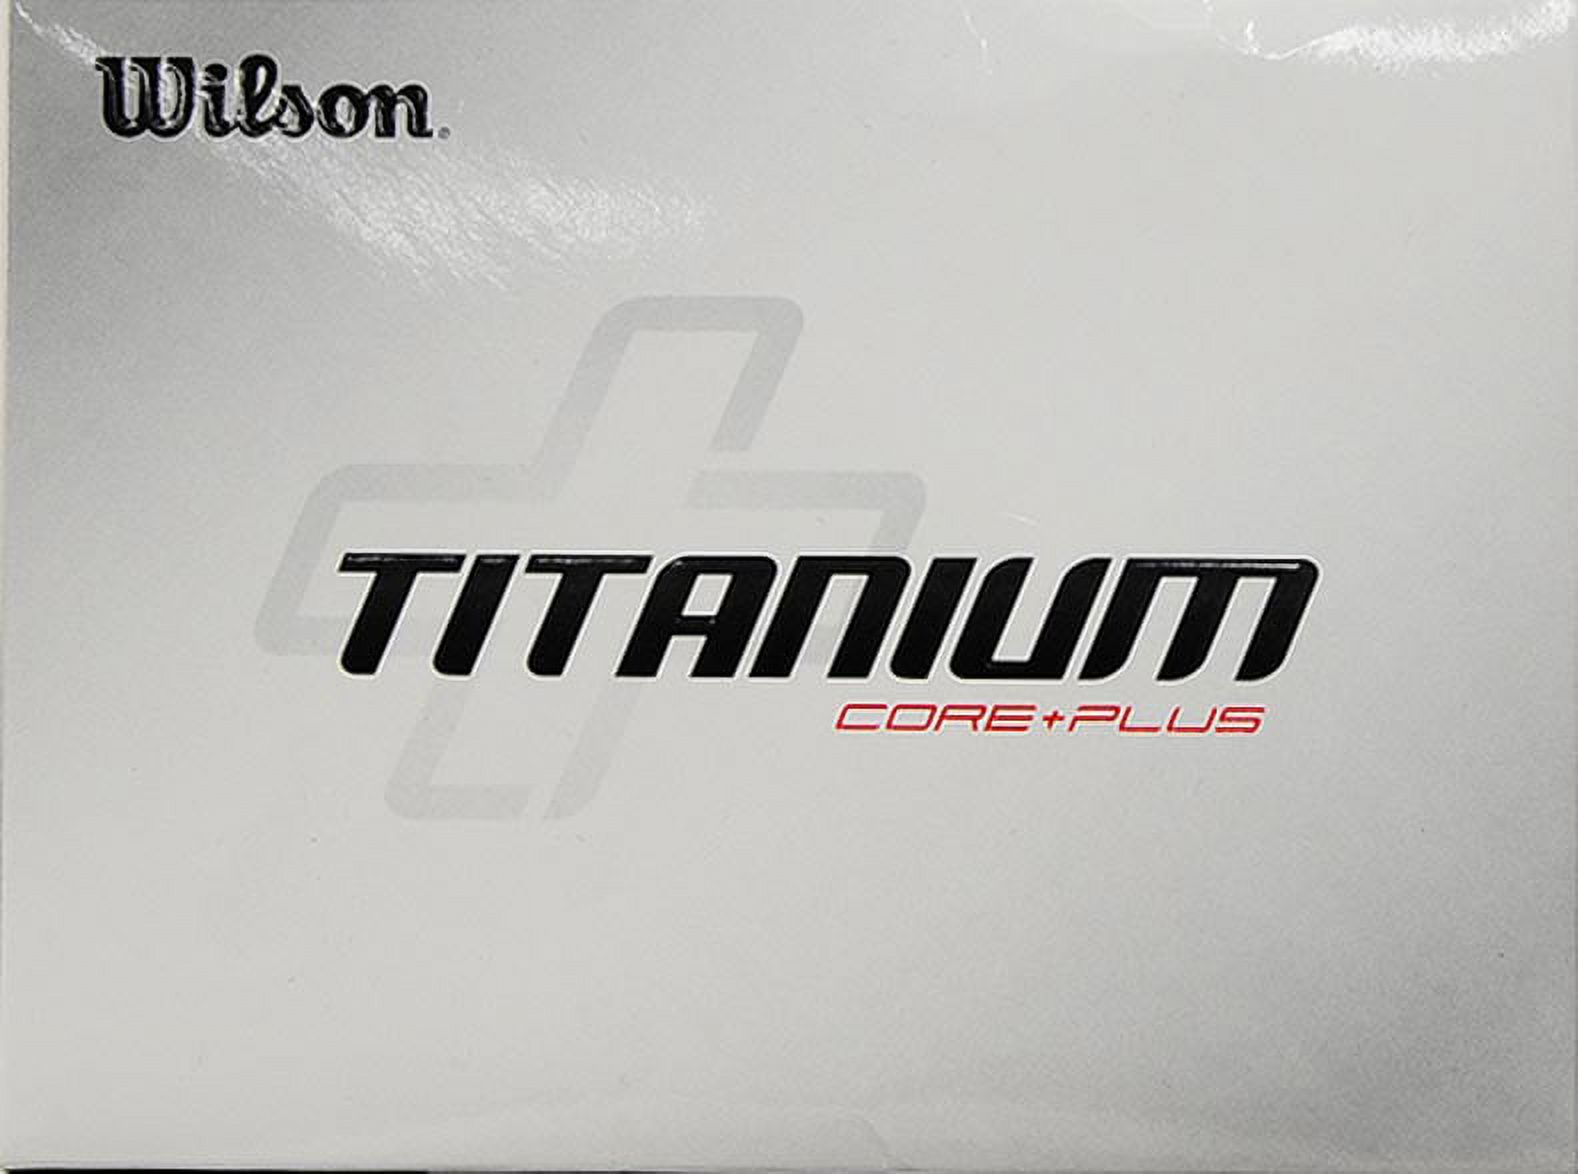 Wilson Titanium Golf Balls, 18 Pack - image 4 of 4